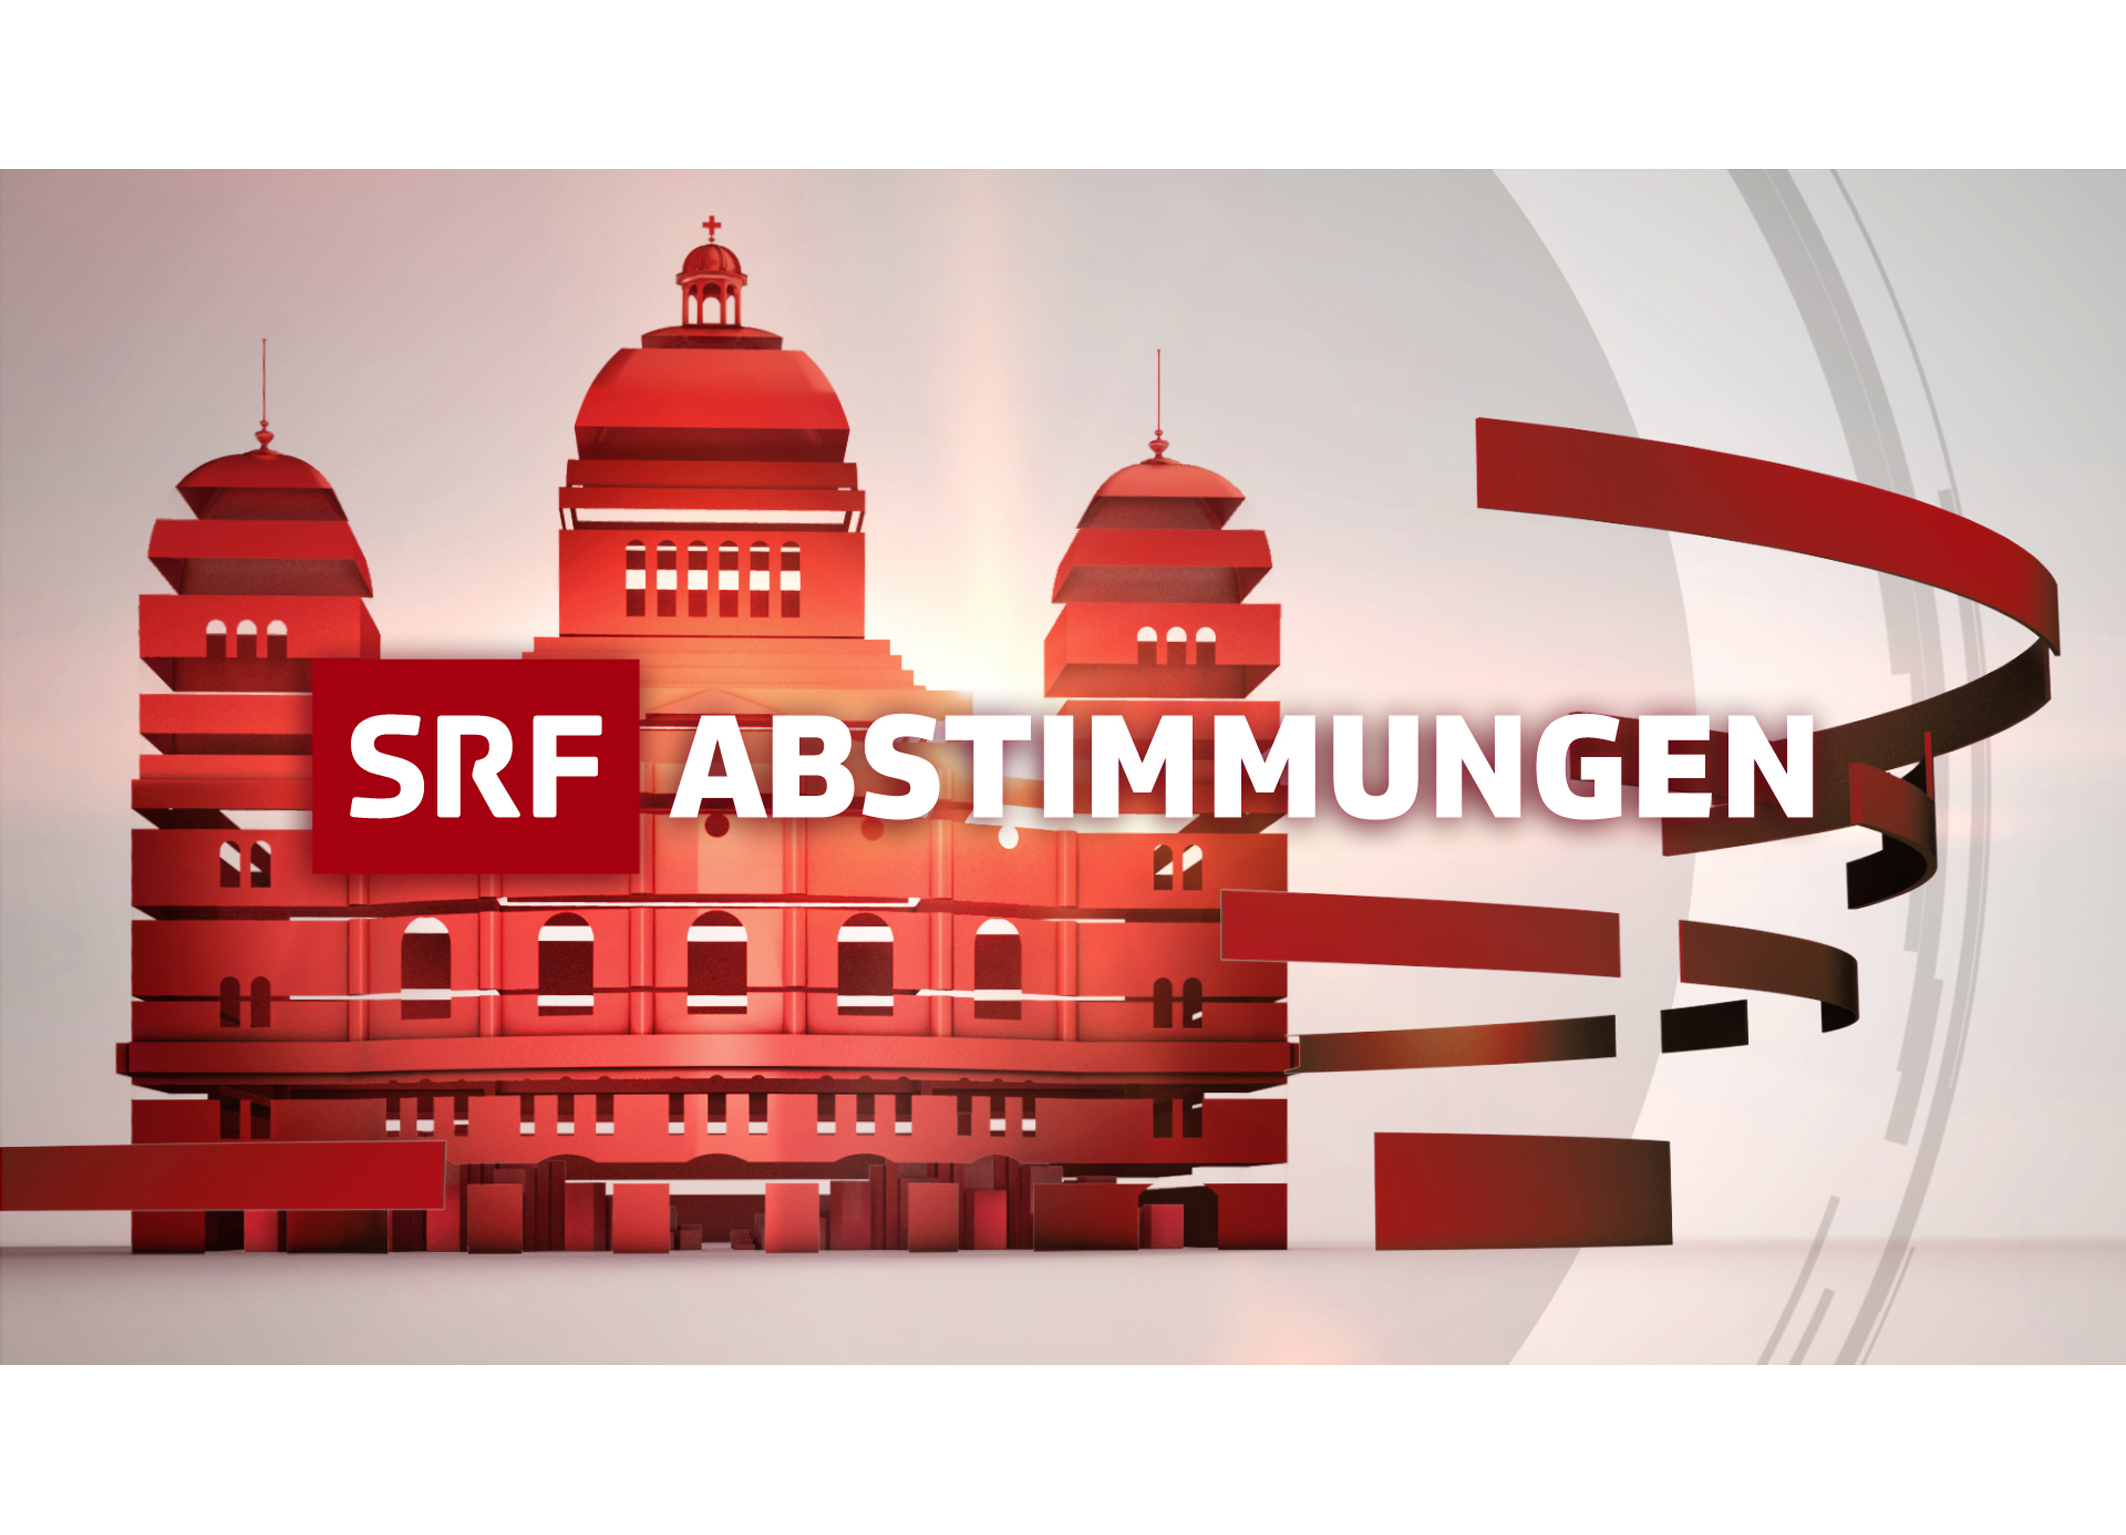 SRF_Abstimmungen_KV_RGB_merged_13x18.jpg